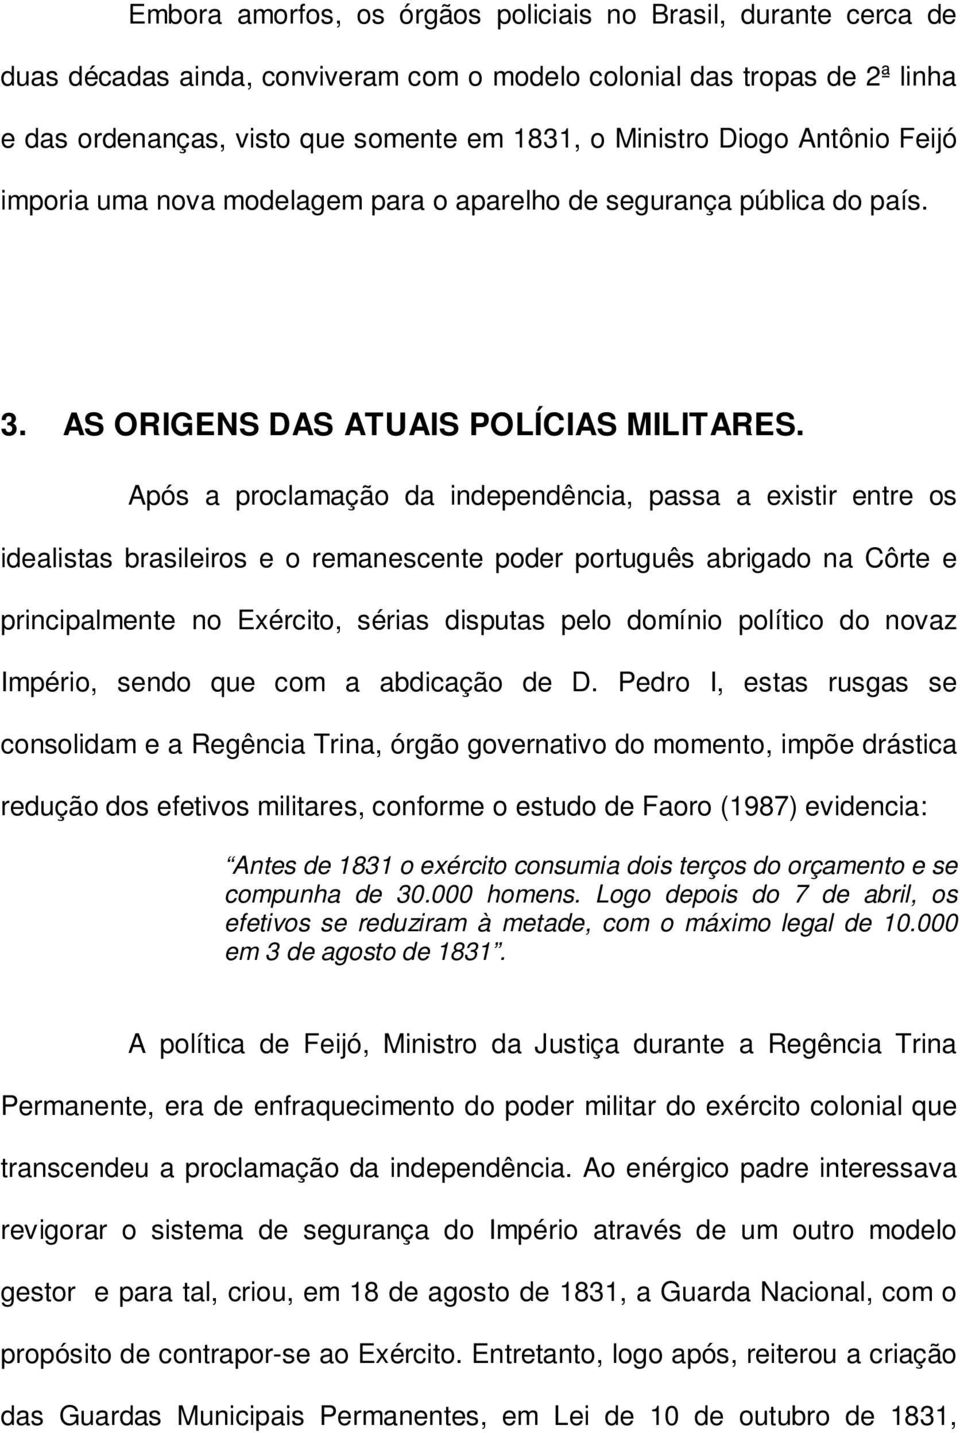 Após a proclamação da independência, passa a existir entre os idealistas brasileiros e o remanescente poder português abrigado na Côrte e principalmente no Exército, sérias disputas pelo domínio